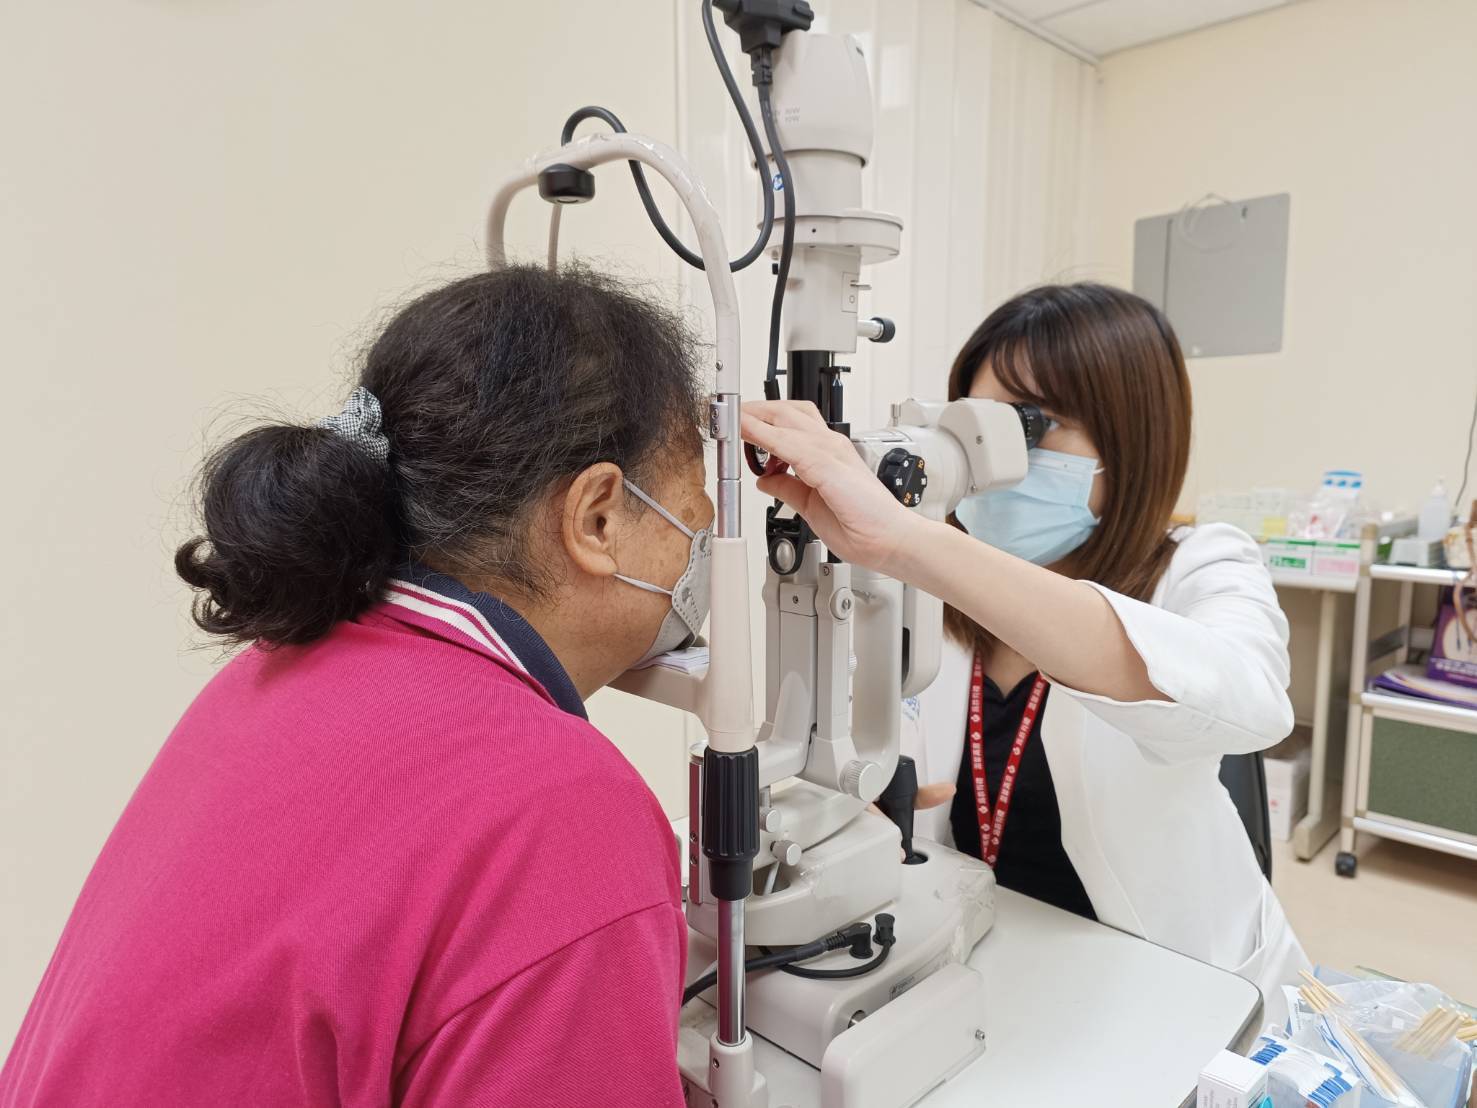 婦人糖尿病未規律服藥造成牽扯性視網膜剝離，視力0.1都不到，經手術逐漸改善。圖／為恭紀念醫院提供